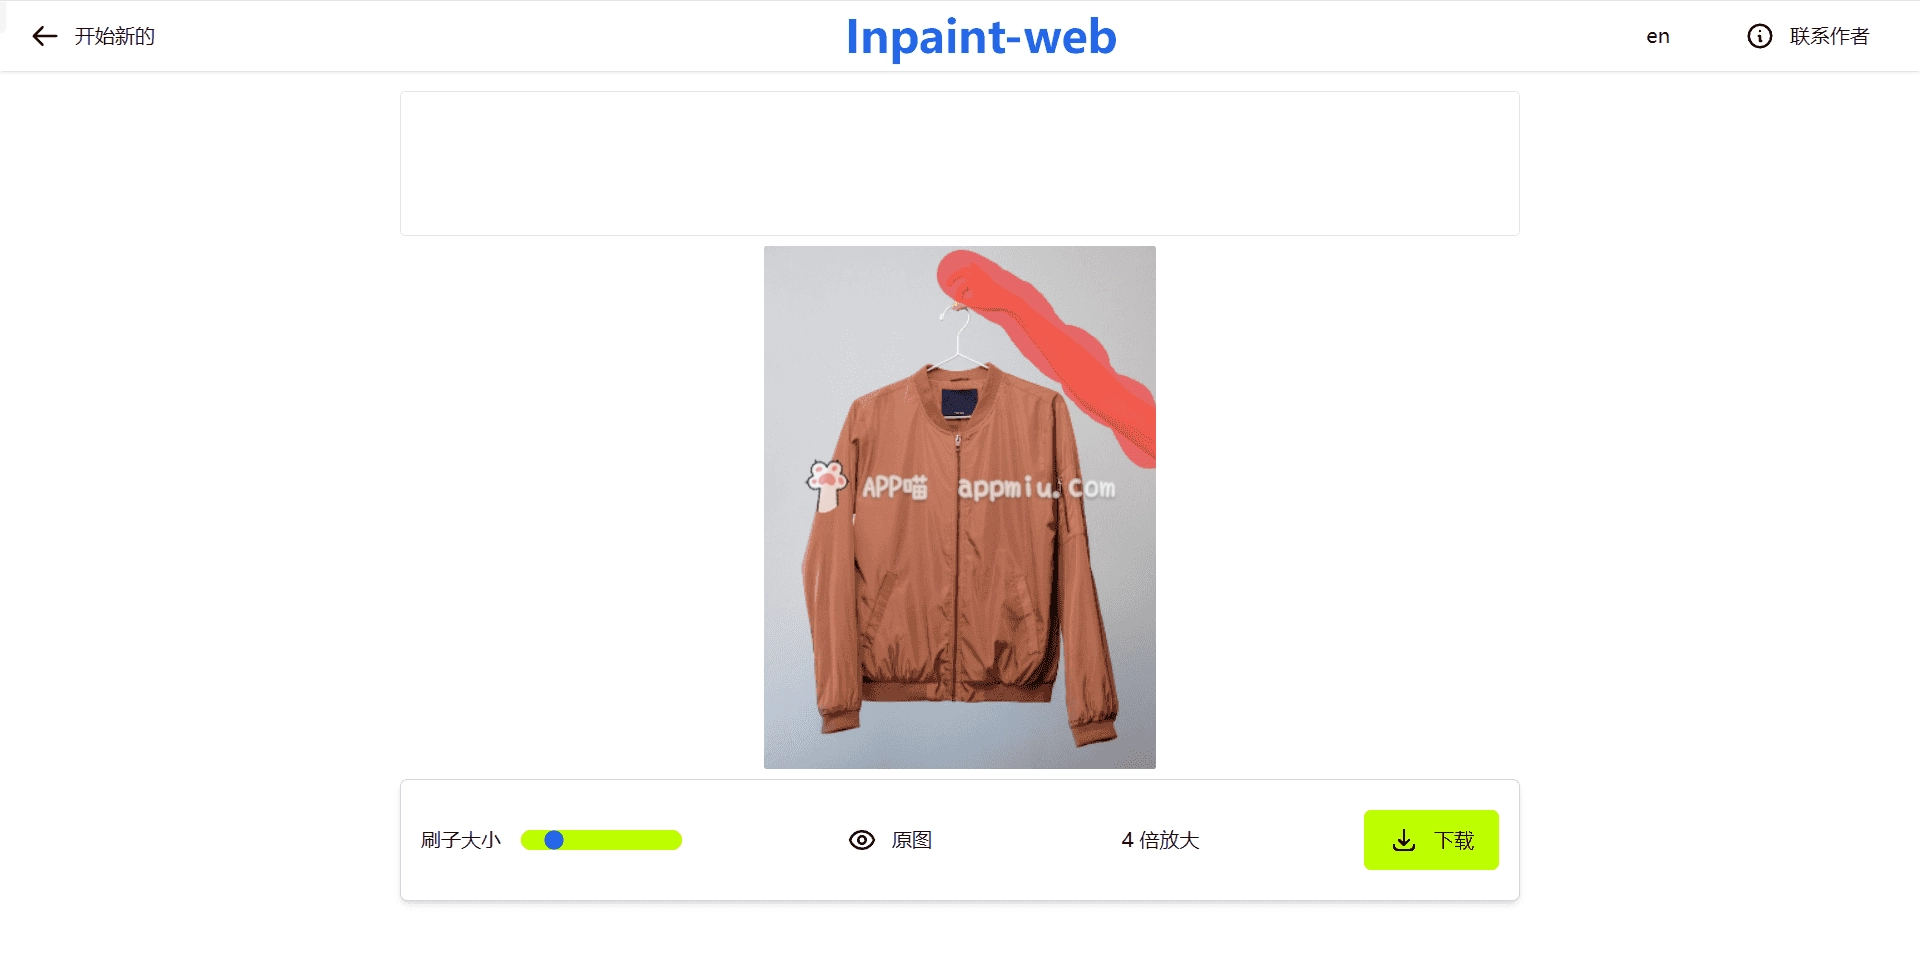 Inpaint web，永久免费在线图片修复与放大工具网站，一件去除图片中不想要的部分